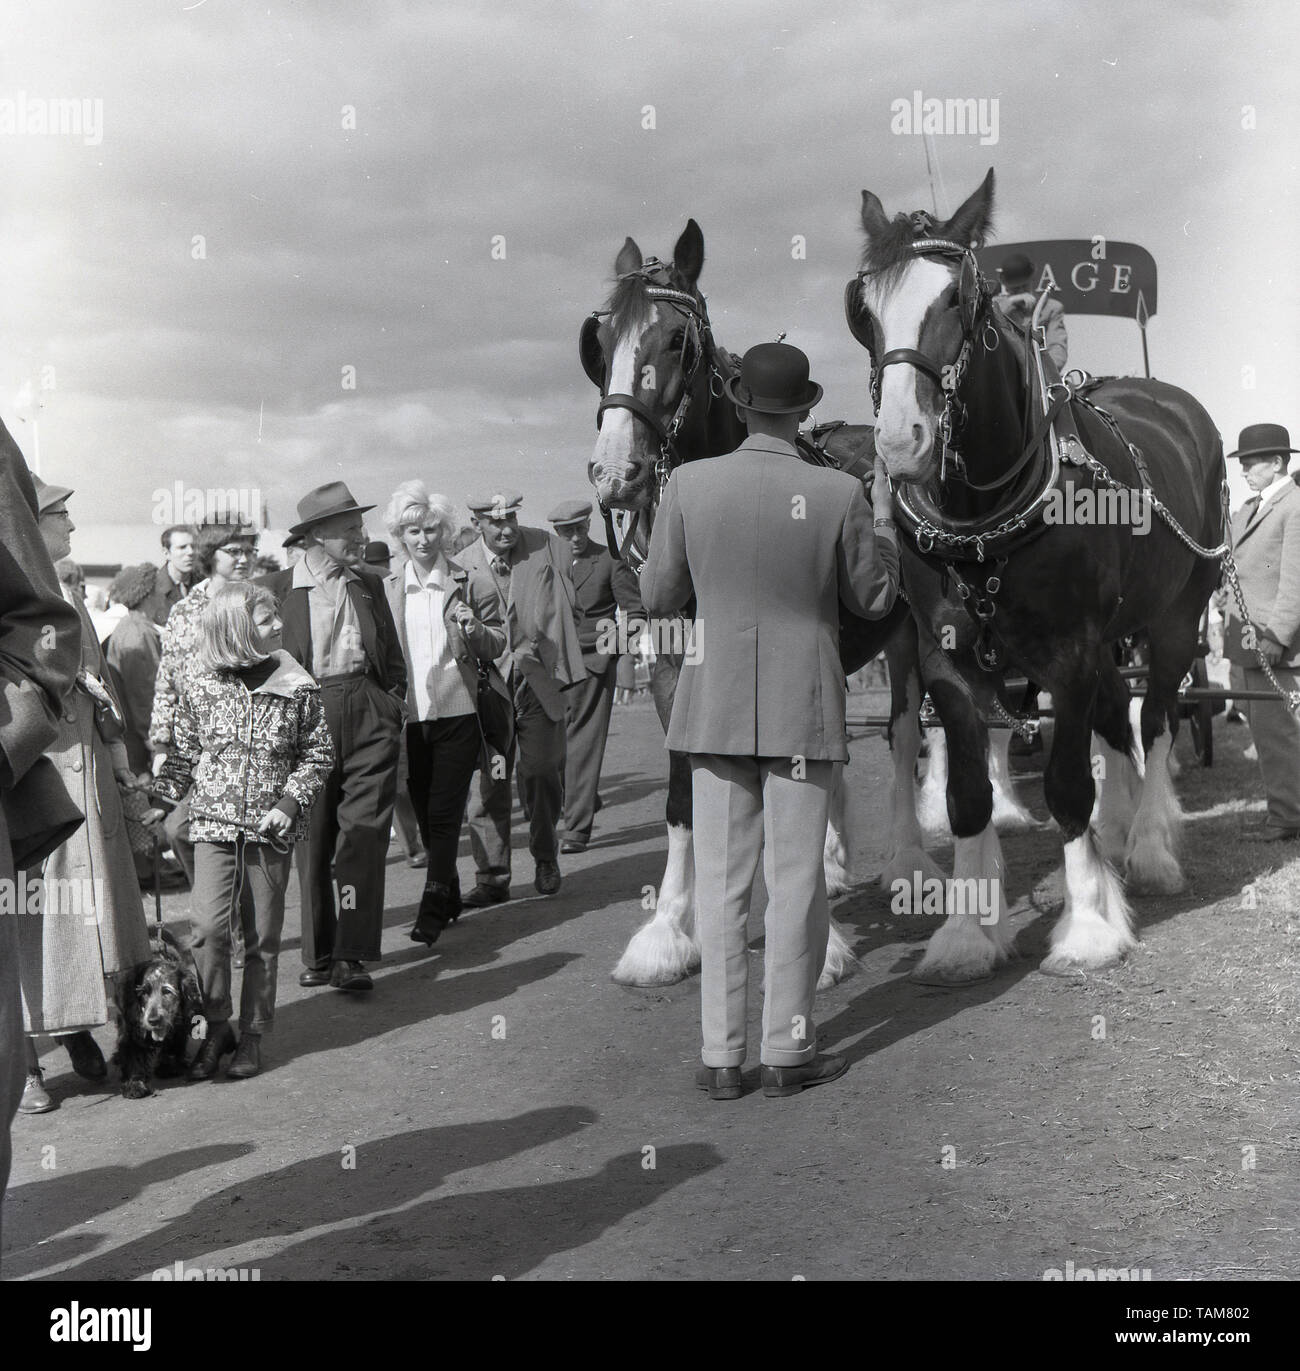 Années 1960, historiques, à l'extérieur à un salon de l'agriculture anglaise, les spectateurs, deux chevaux shire attaché à un panier livraison bière Courage, Buckinghamshire, Angleterre, Royaume-Uni. Horse-driven bière ou d'ale livraison a été une caractéristique de la vie rurale avant le transport motorisé. Banque D'Images